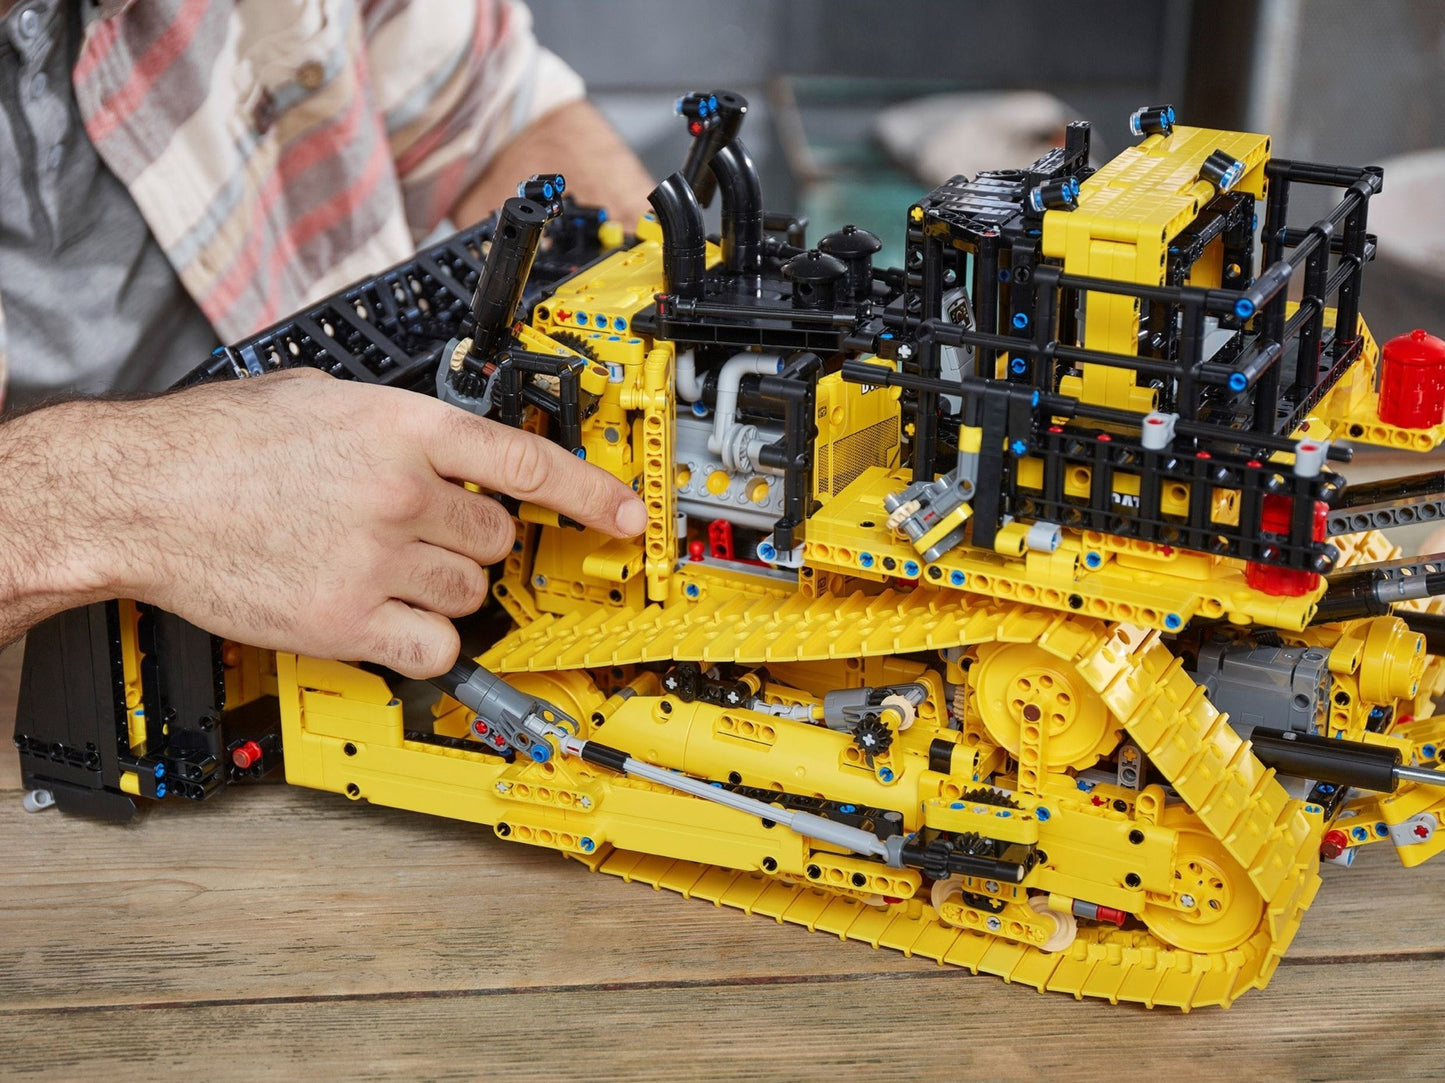 LEGO Technic - Buldozer Cat® D11 controlat de aplicatie 42131, 3854 piese